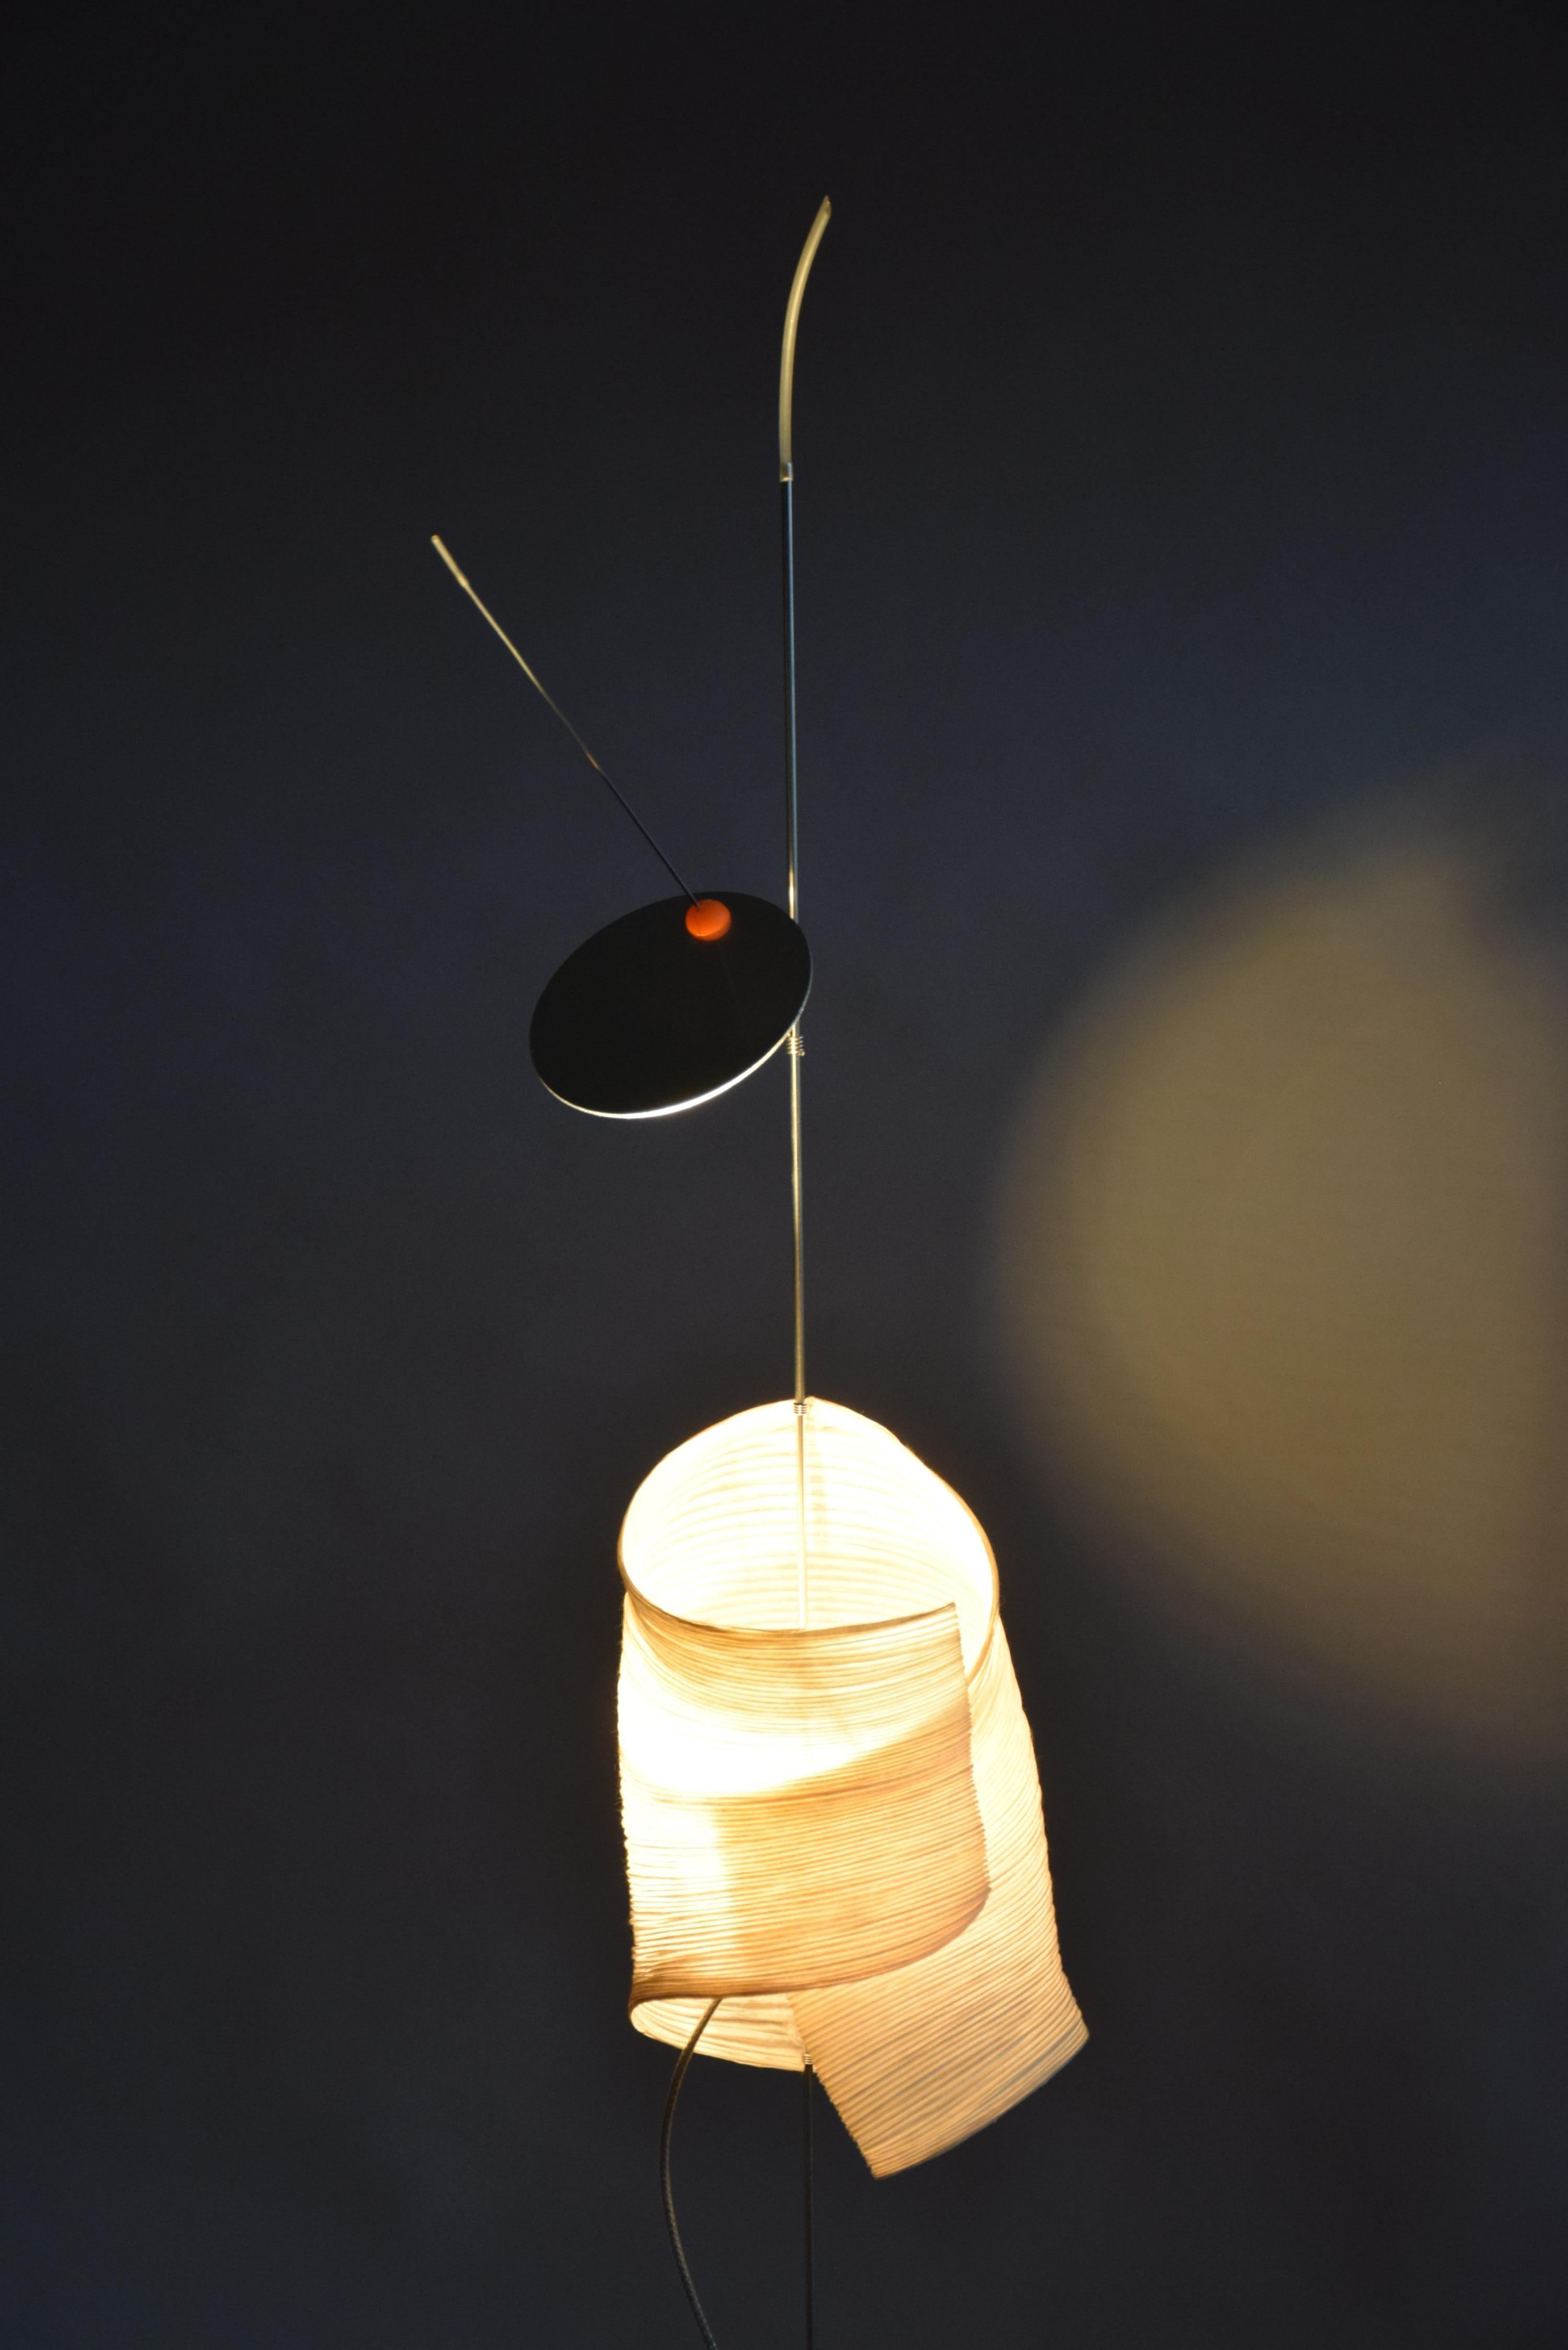 Illuminez votre espace avec une élégance intemporelle : Lampe de table Watapunga 1998

Voici la lampe de table Watapunga, un chef-d'œuvre lumineux conçu par Ingo Maurer et Dagmar Mombach en 1998. Cette lampe de table transcende la simple